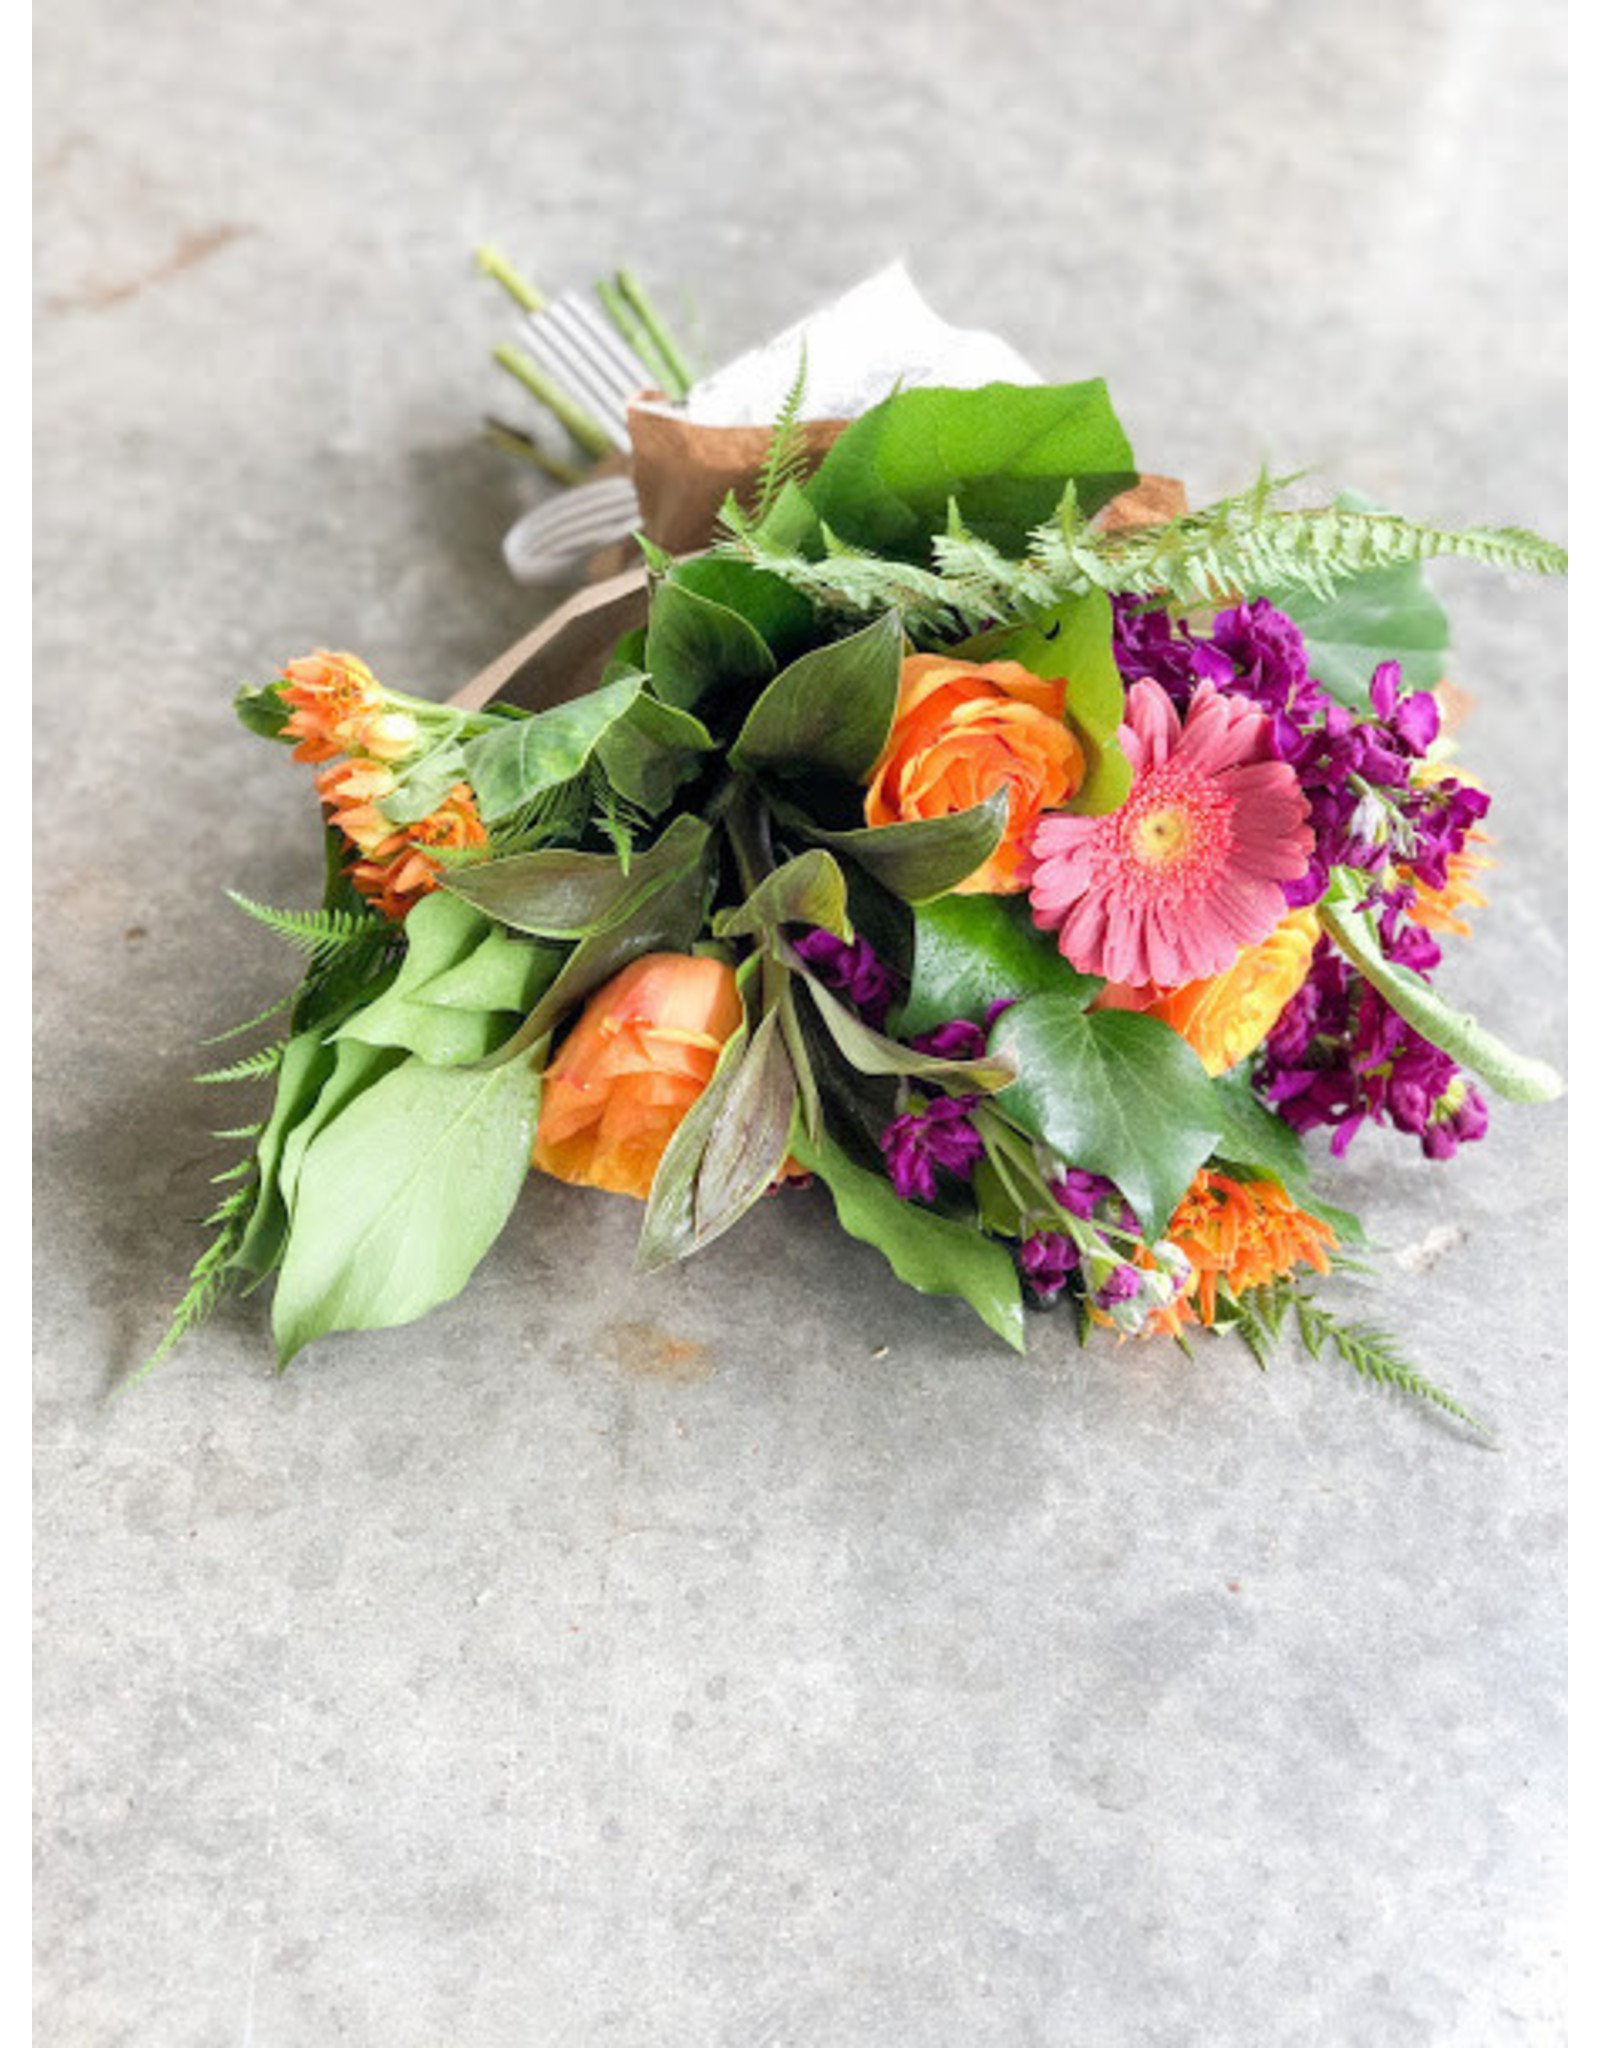 Charming Flower Bundle Subscription - 11.6.20